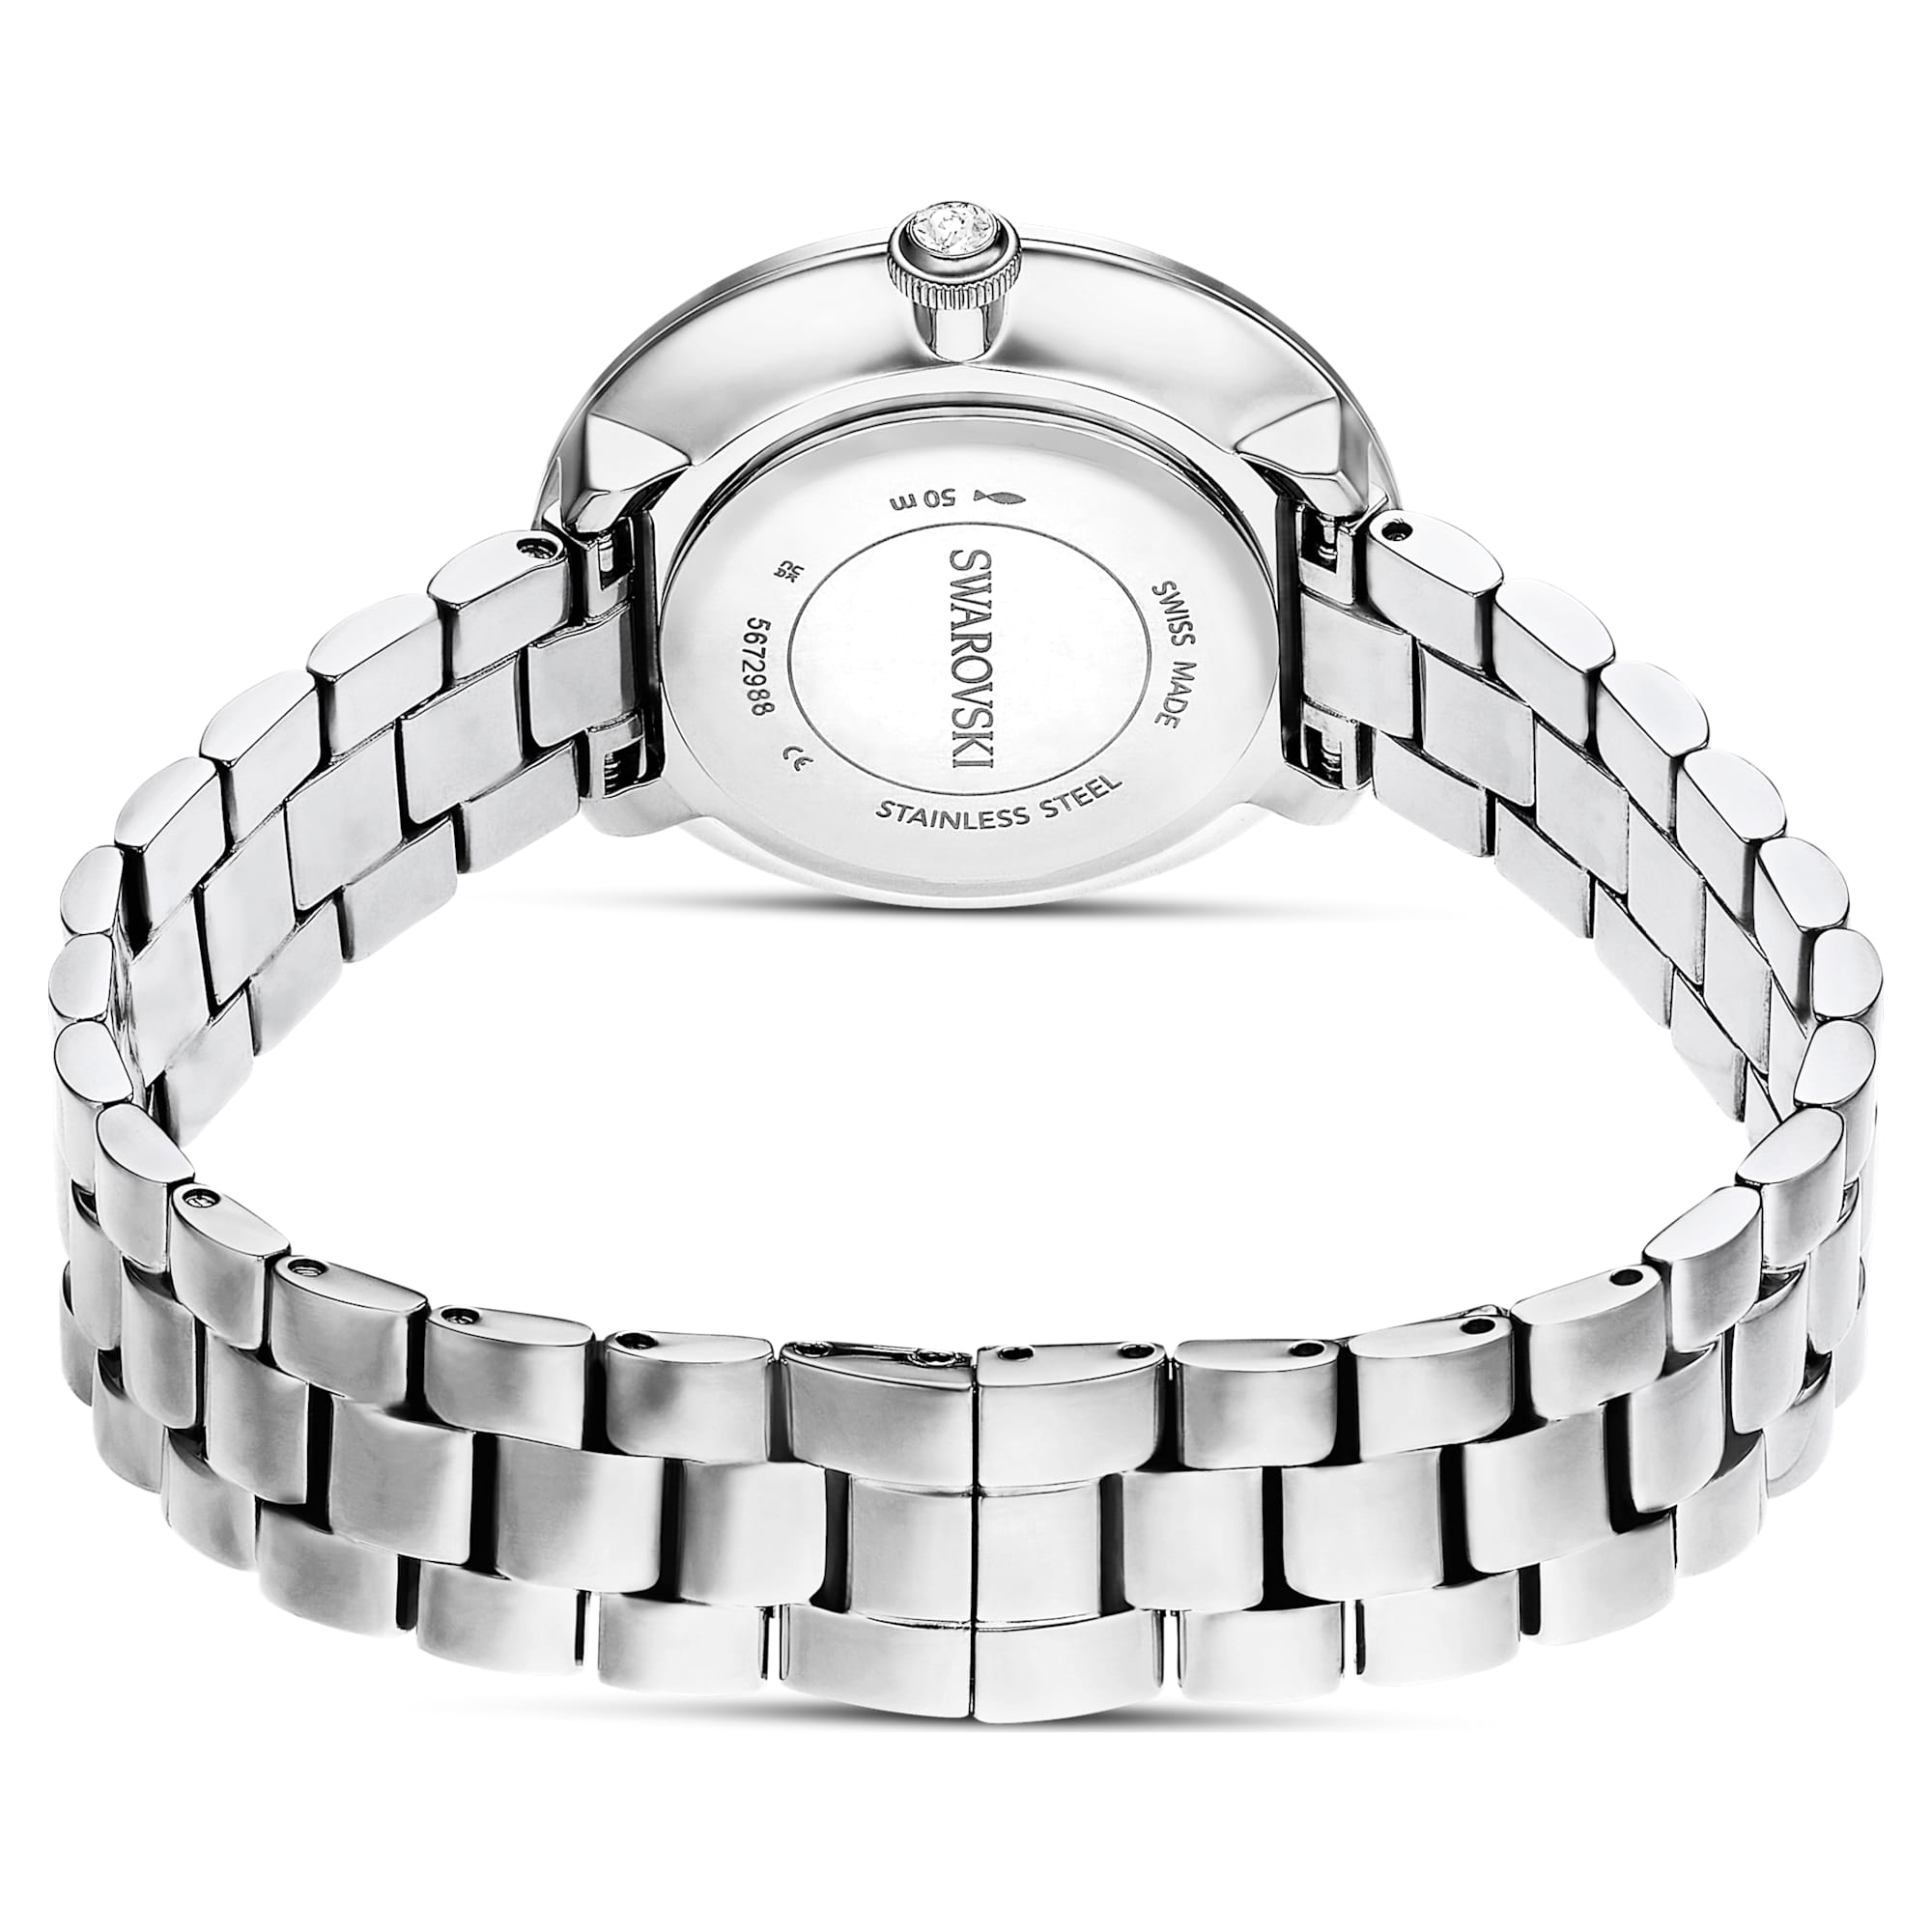 Certa – Weiß Silber – Uhr – Swarovski